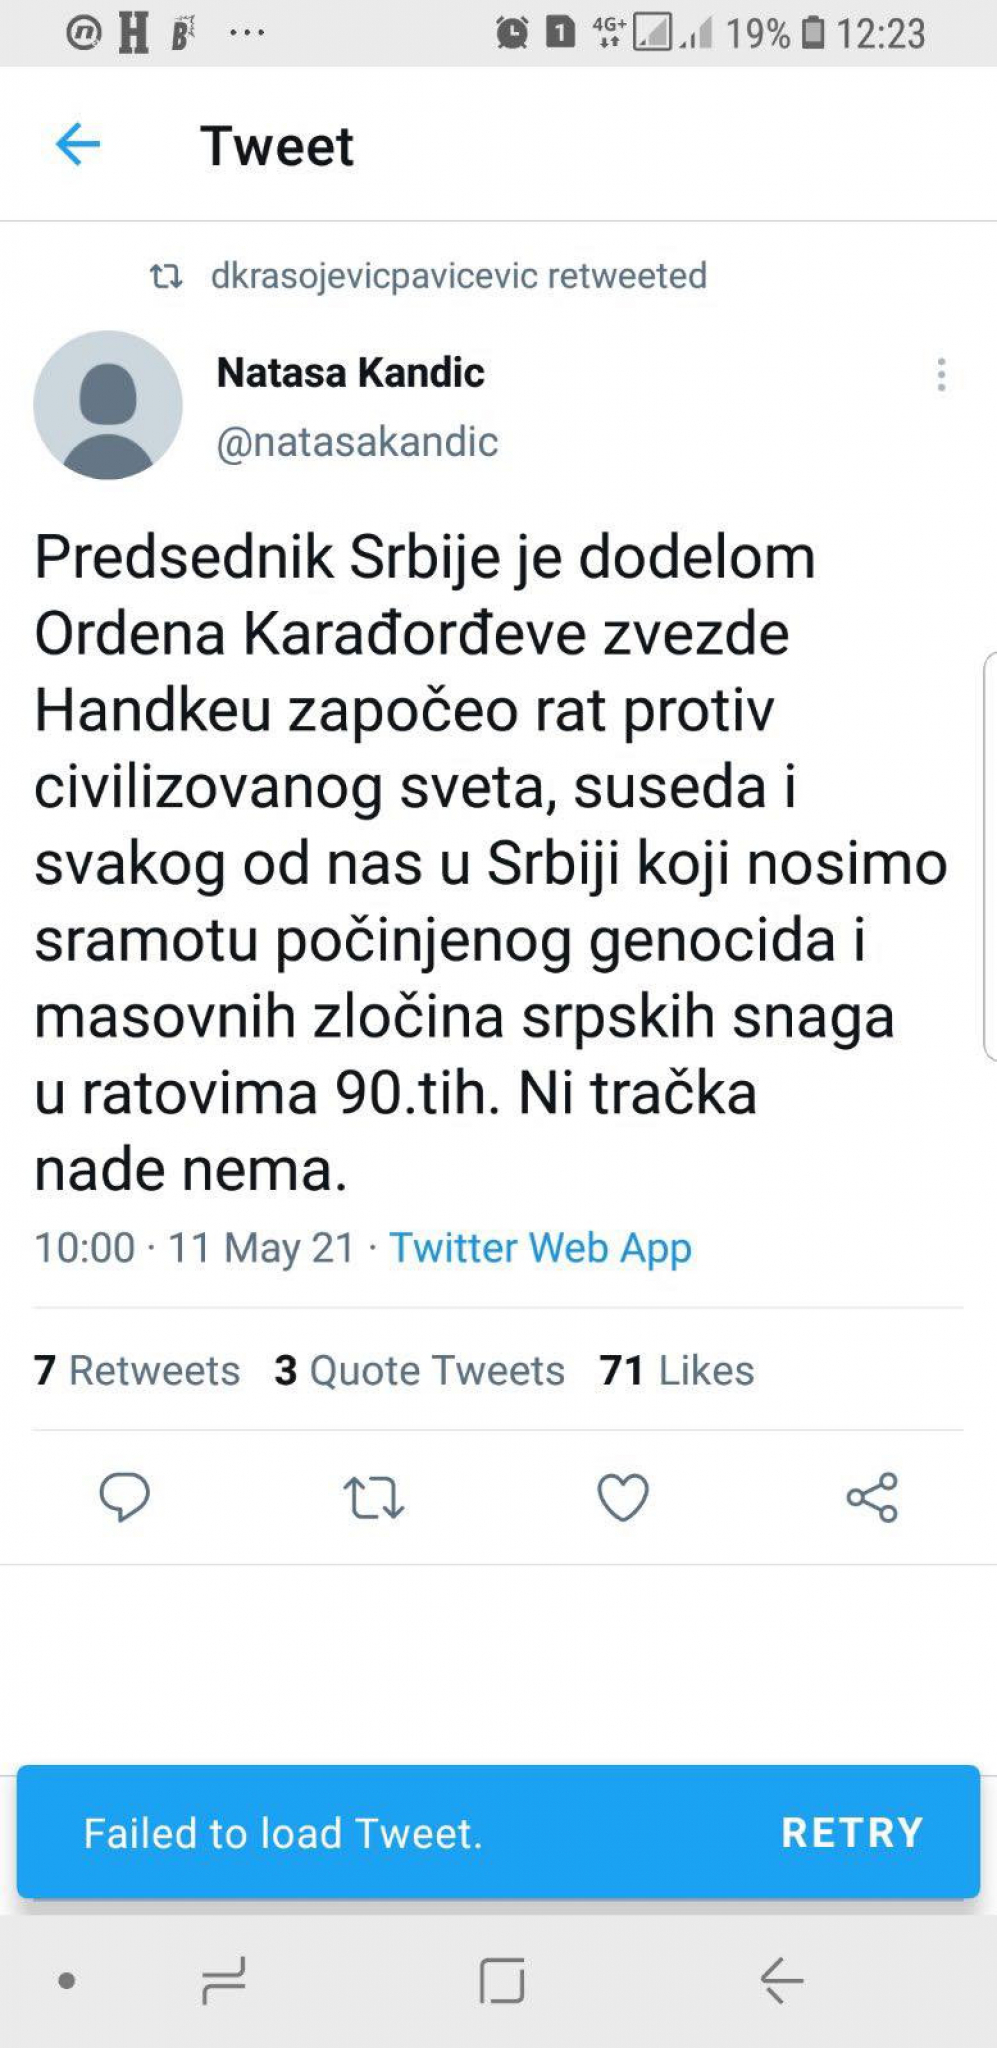 Nataša Kandić: Predsednik Srbije je započeo rat protiv civilizovanog sveta, Srbi su počinili genocid i masovne zločine u ratovima